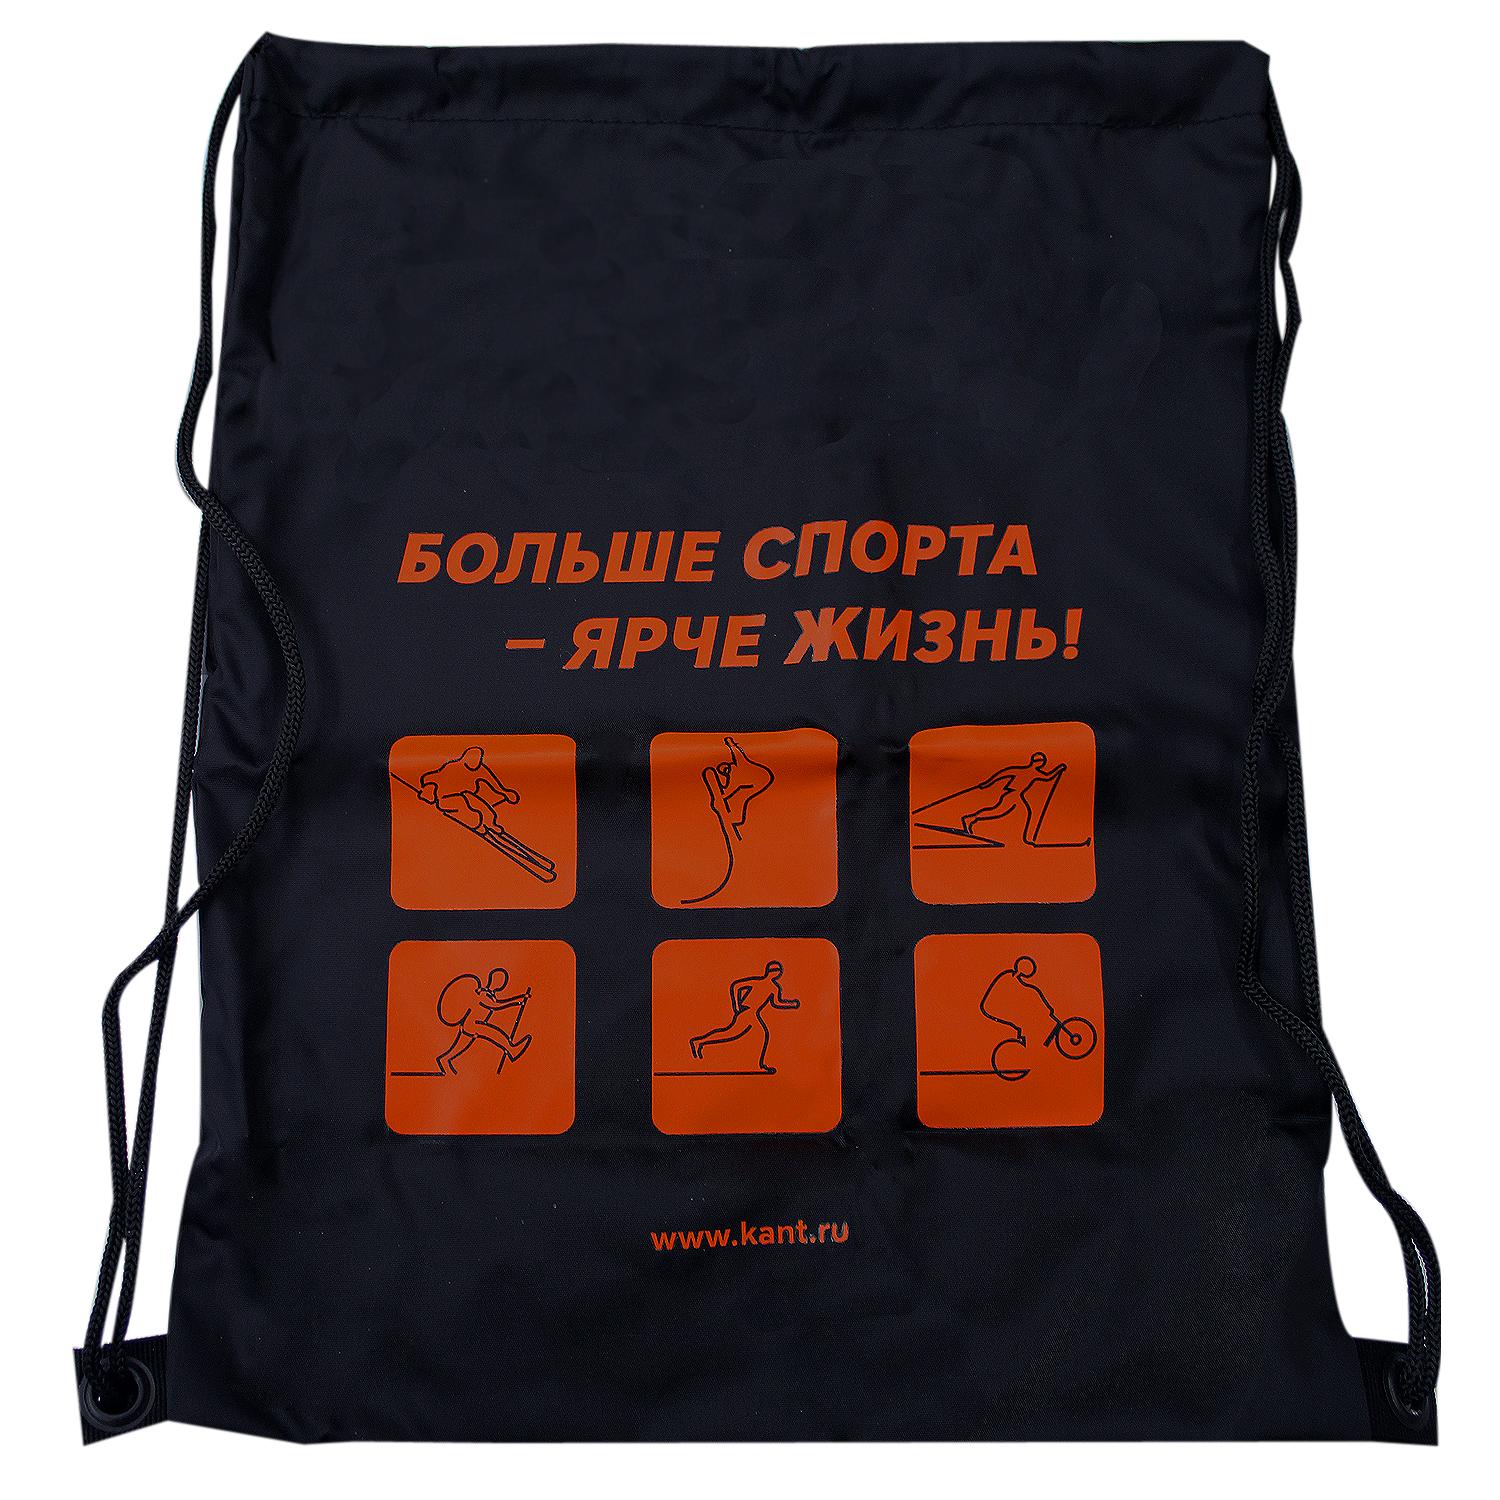 фото Сумка для сменки кант promo bag чёрный/оранжевый (б/р:one size)